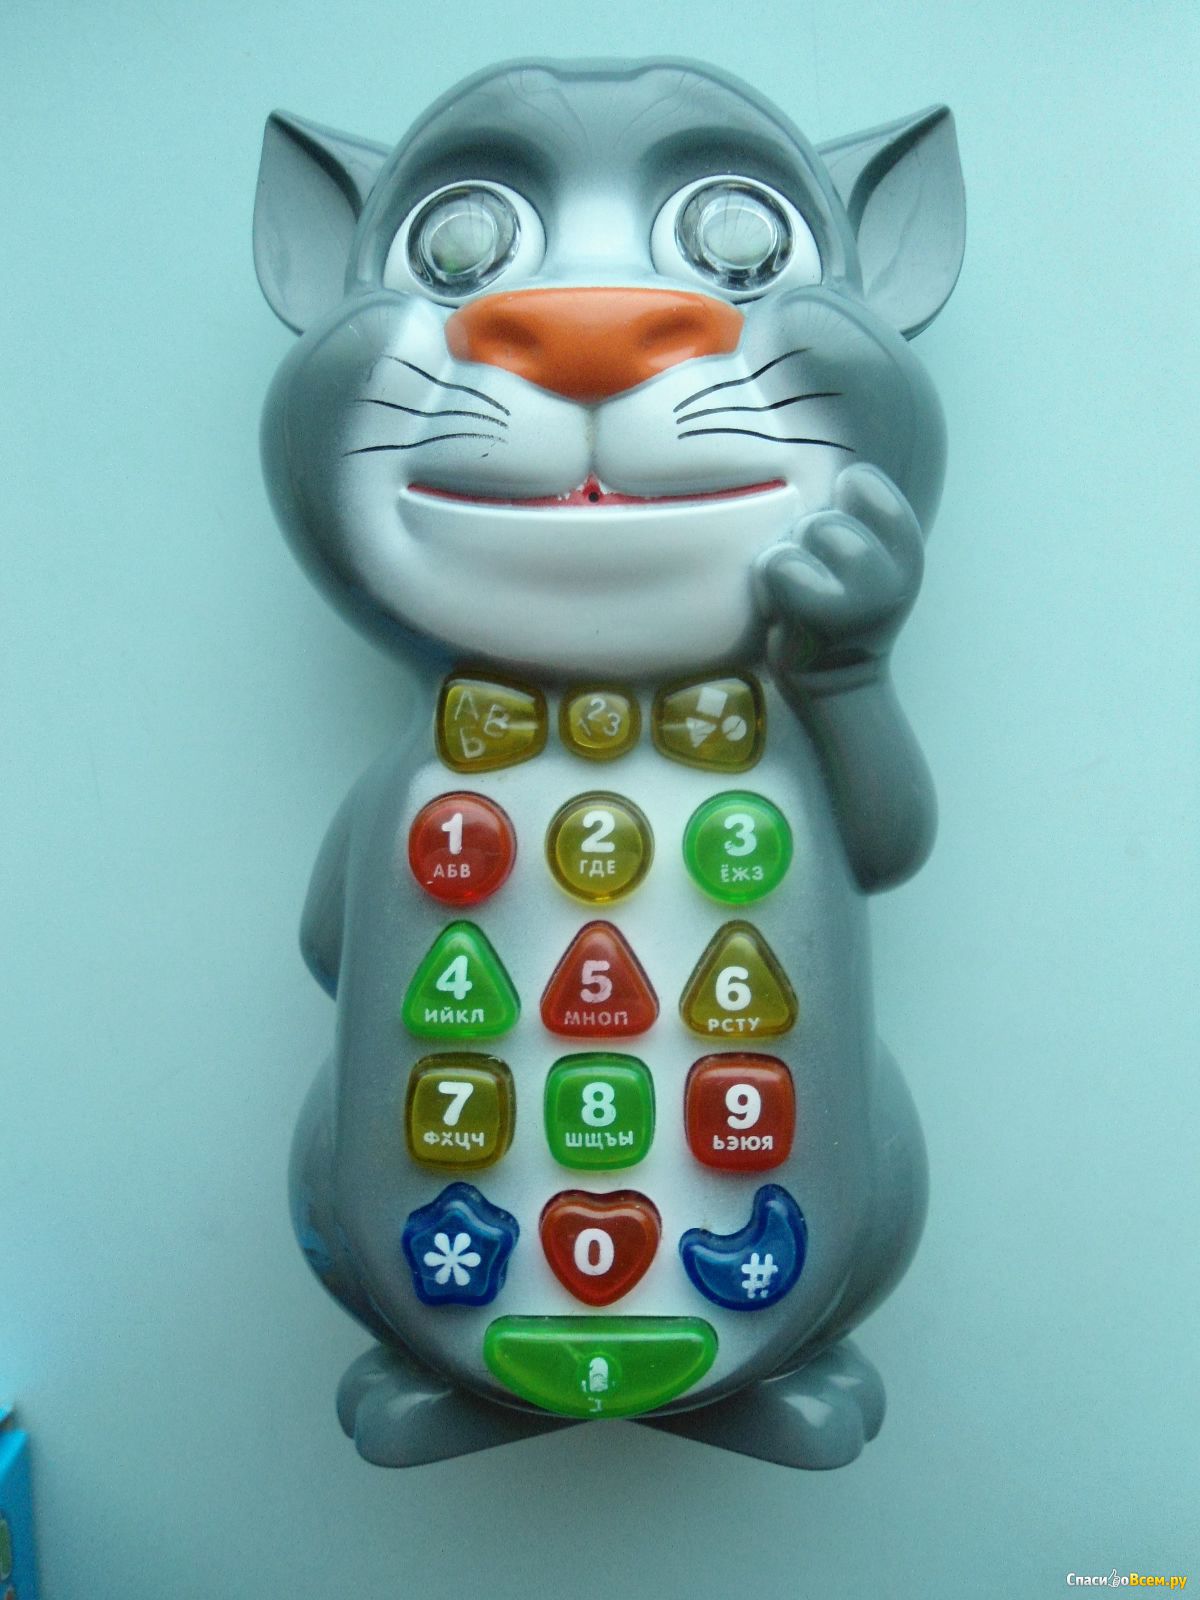 Tom на телефон. Говорящий том игрушка. Говорящий кот игрушка. Интерактивный детский смартфон. Кот том игрушка интерактивная.